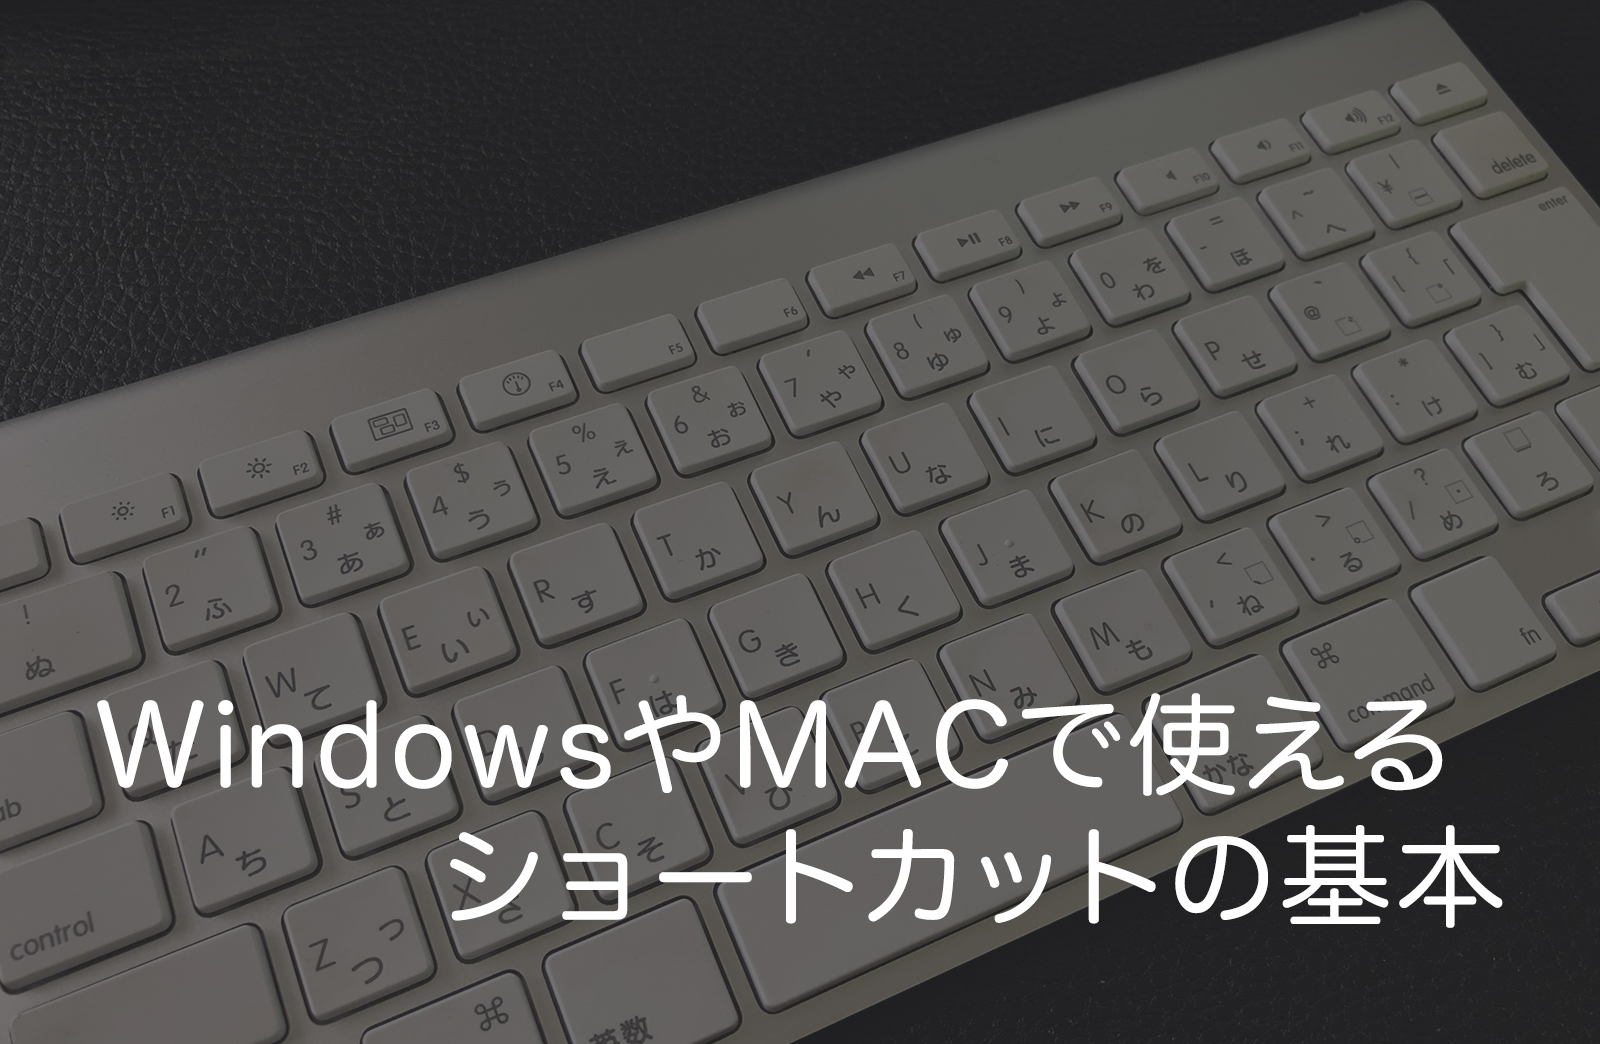 WindowsやMacで使えるショートカットキーの基本